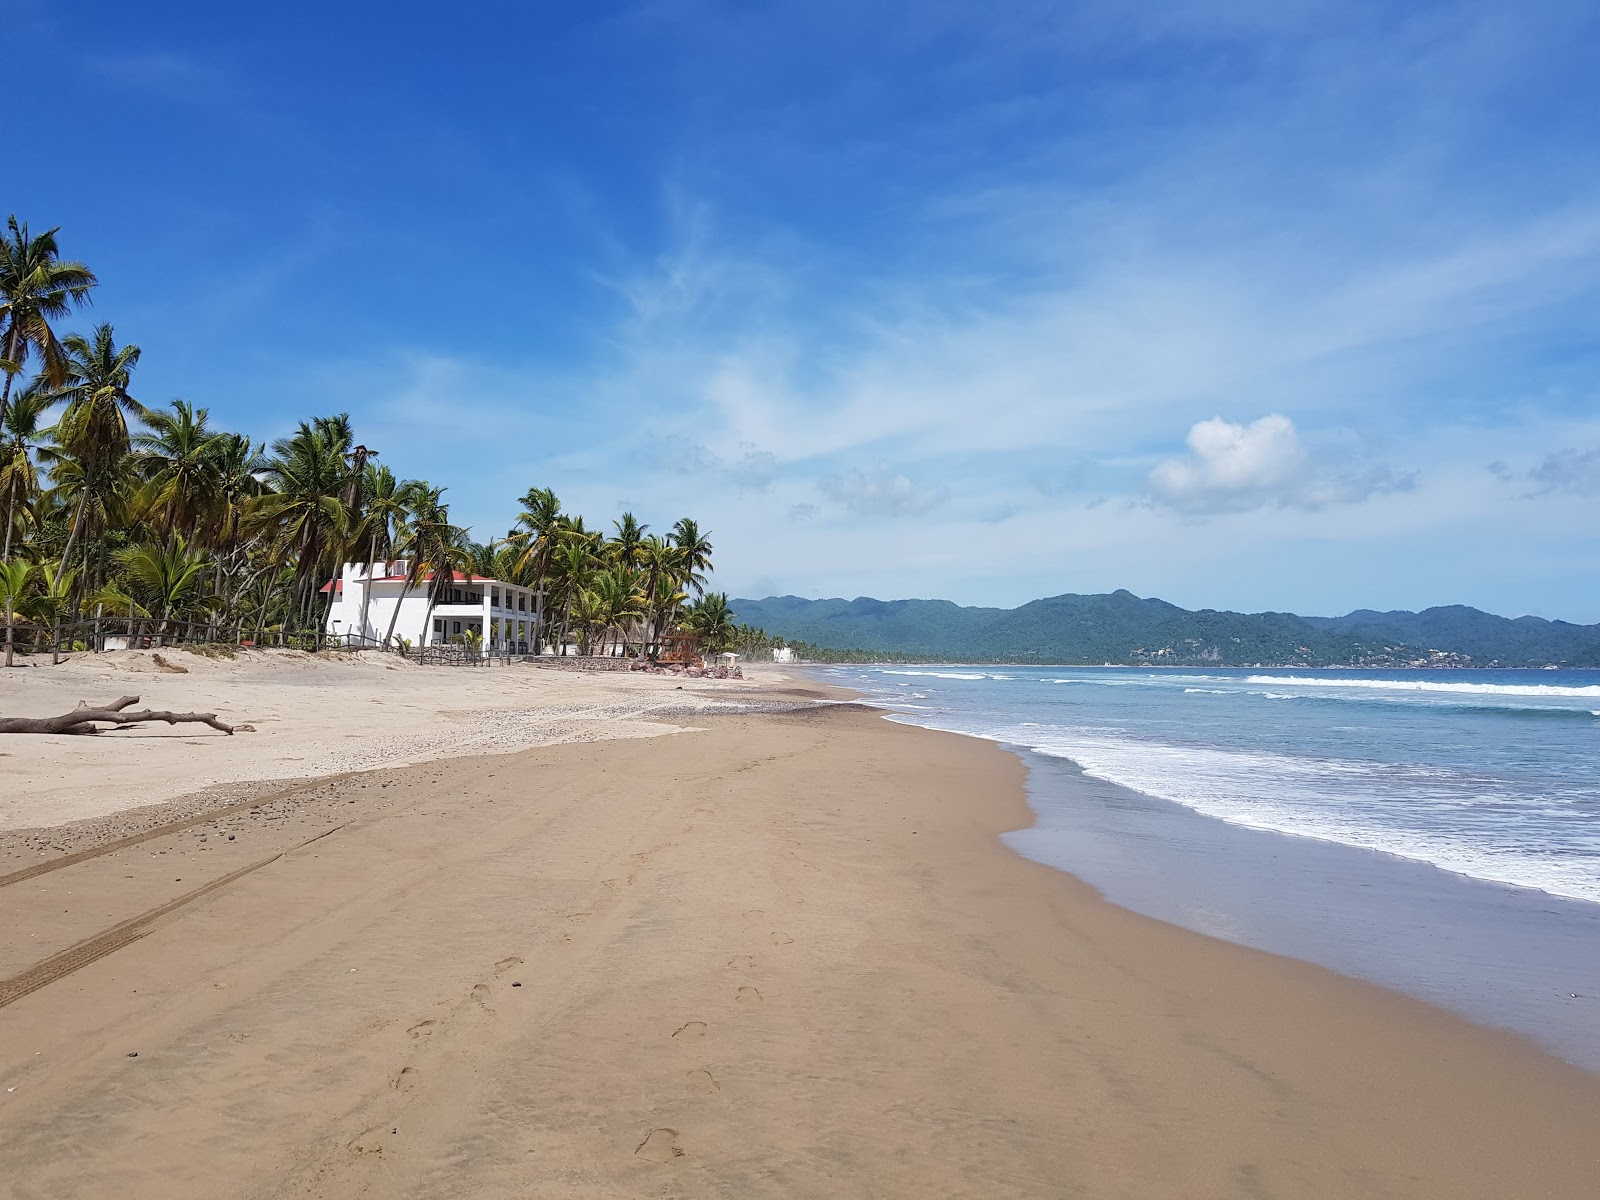 Boca De Iguanas'in fotoğrafı i̇nce kahverengi kum yüzey ile